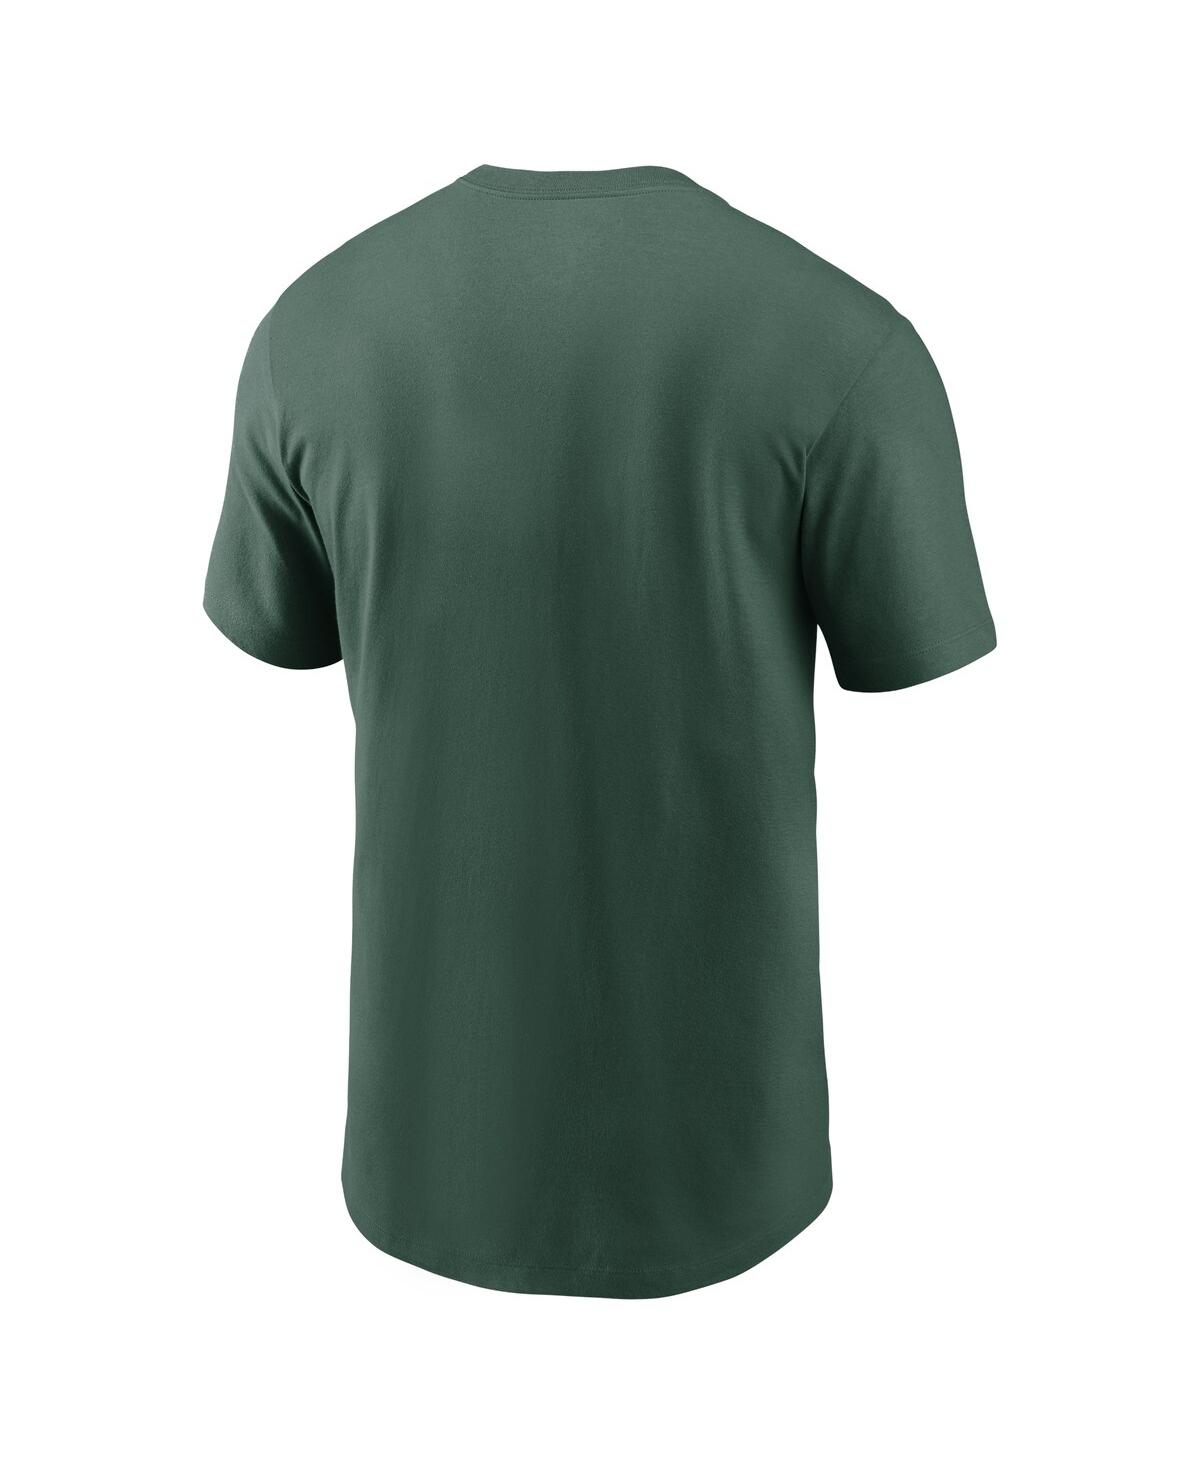 Shop Nike Men's  Green Green Bay Packers Muscle T-shirt